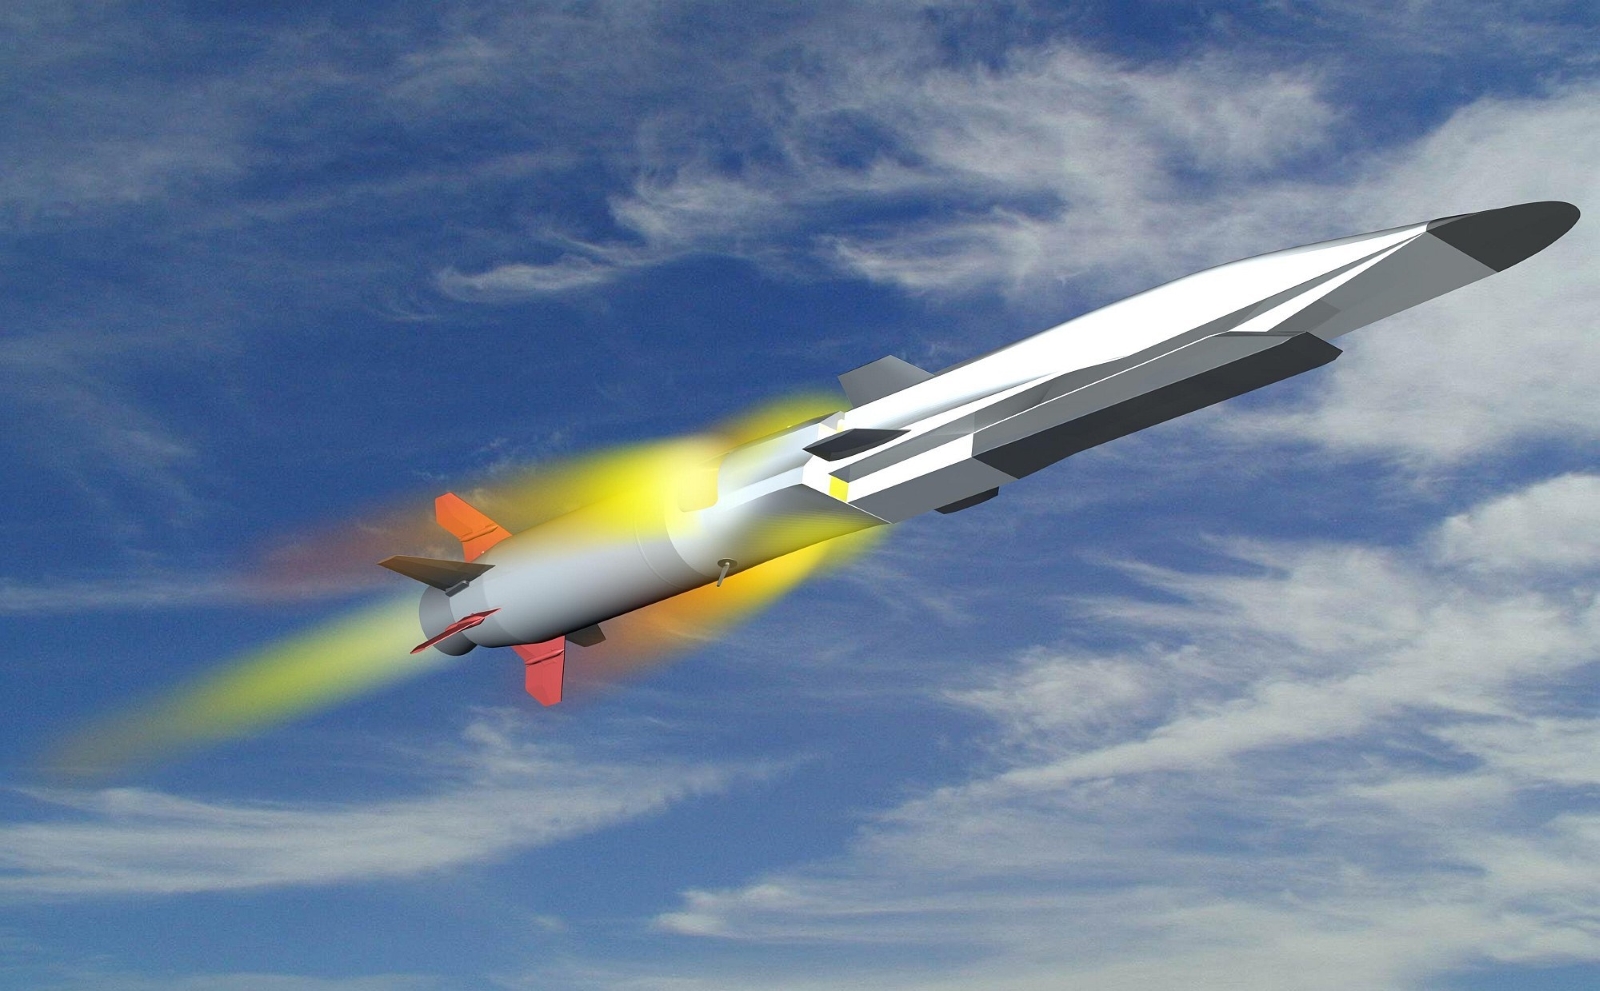 Equipé d'un superstatoréacteur, le X51 Waverider conçu par Boeing est potentiellement capable d'atteindre Mach 6. De son côté, la France compte mettre au point un planeur hypersonique aussi performant. © Boeing